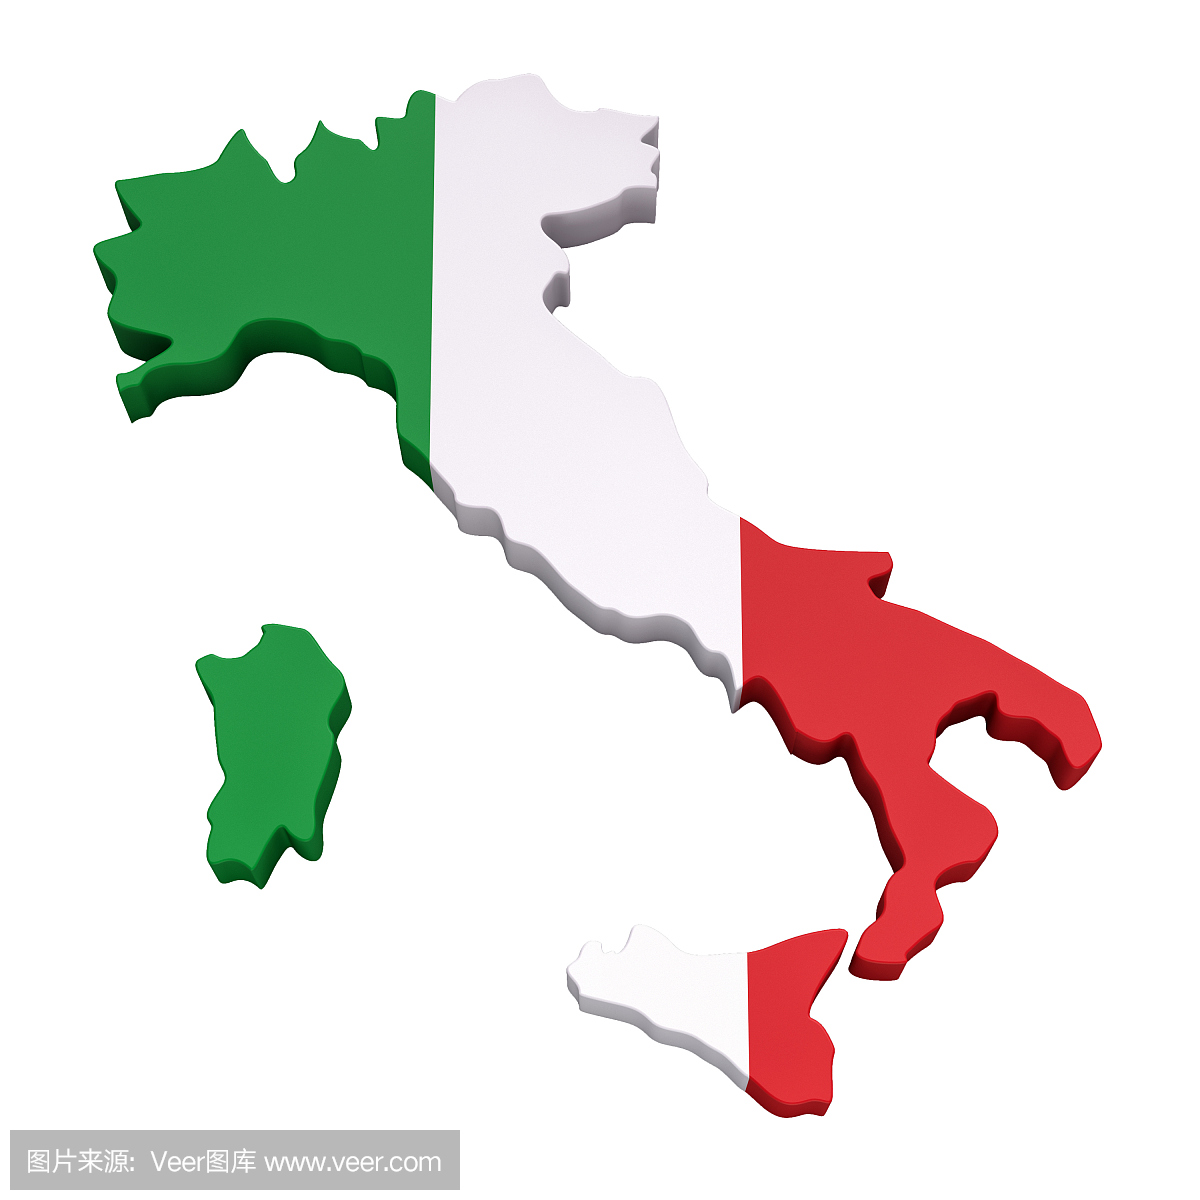 意大利地图 - 库存图片